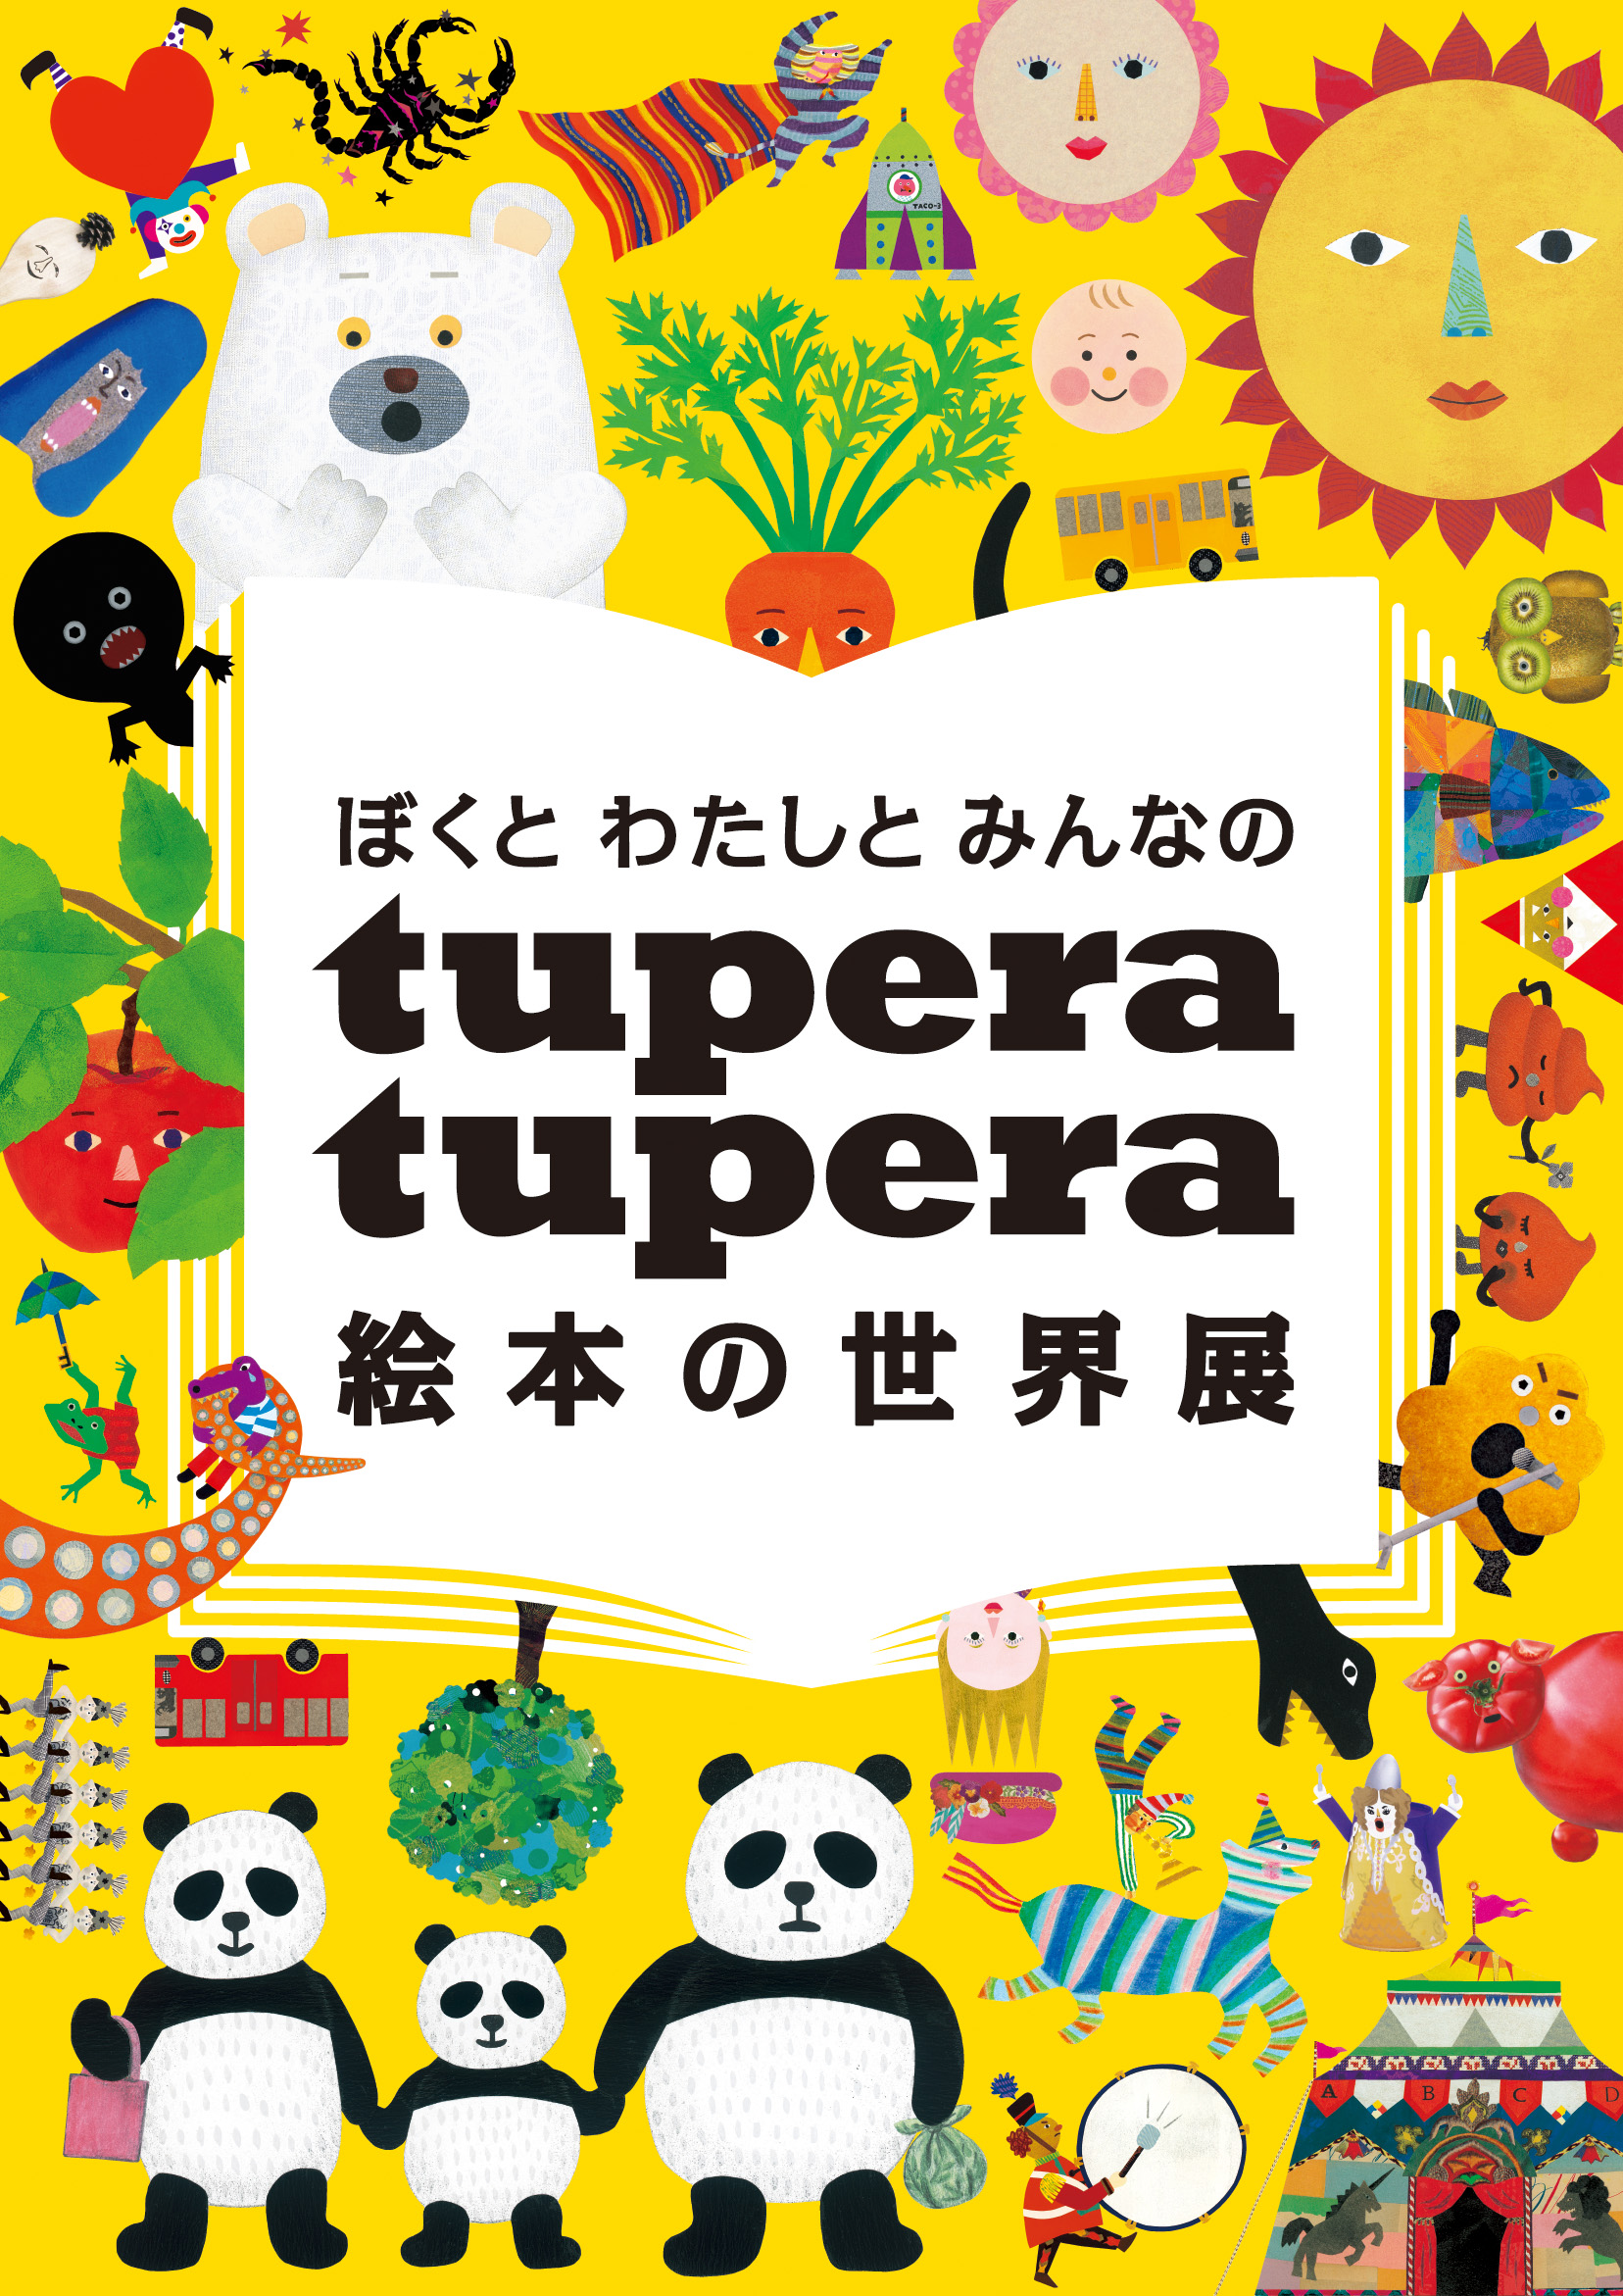 ナンセンスなキャラに萌える　「ぼくとわたしとみんなの tupera tupera 絵本の世界展」【今